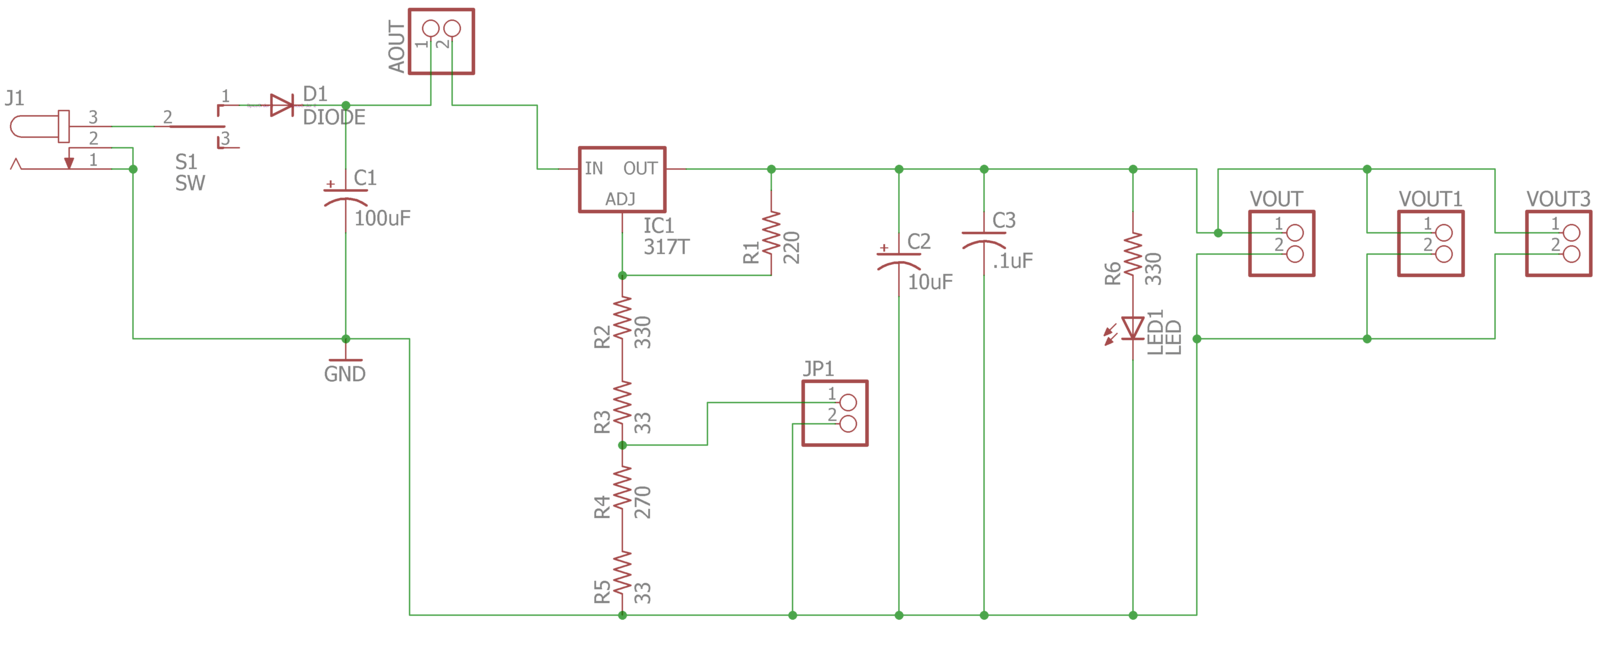 image of wiring diagram